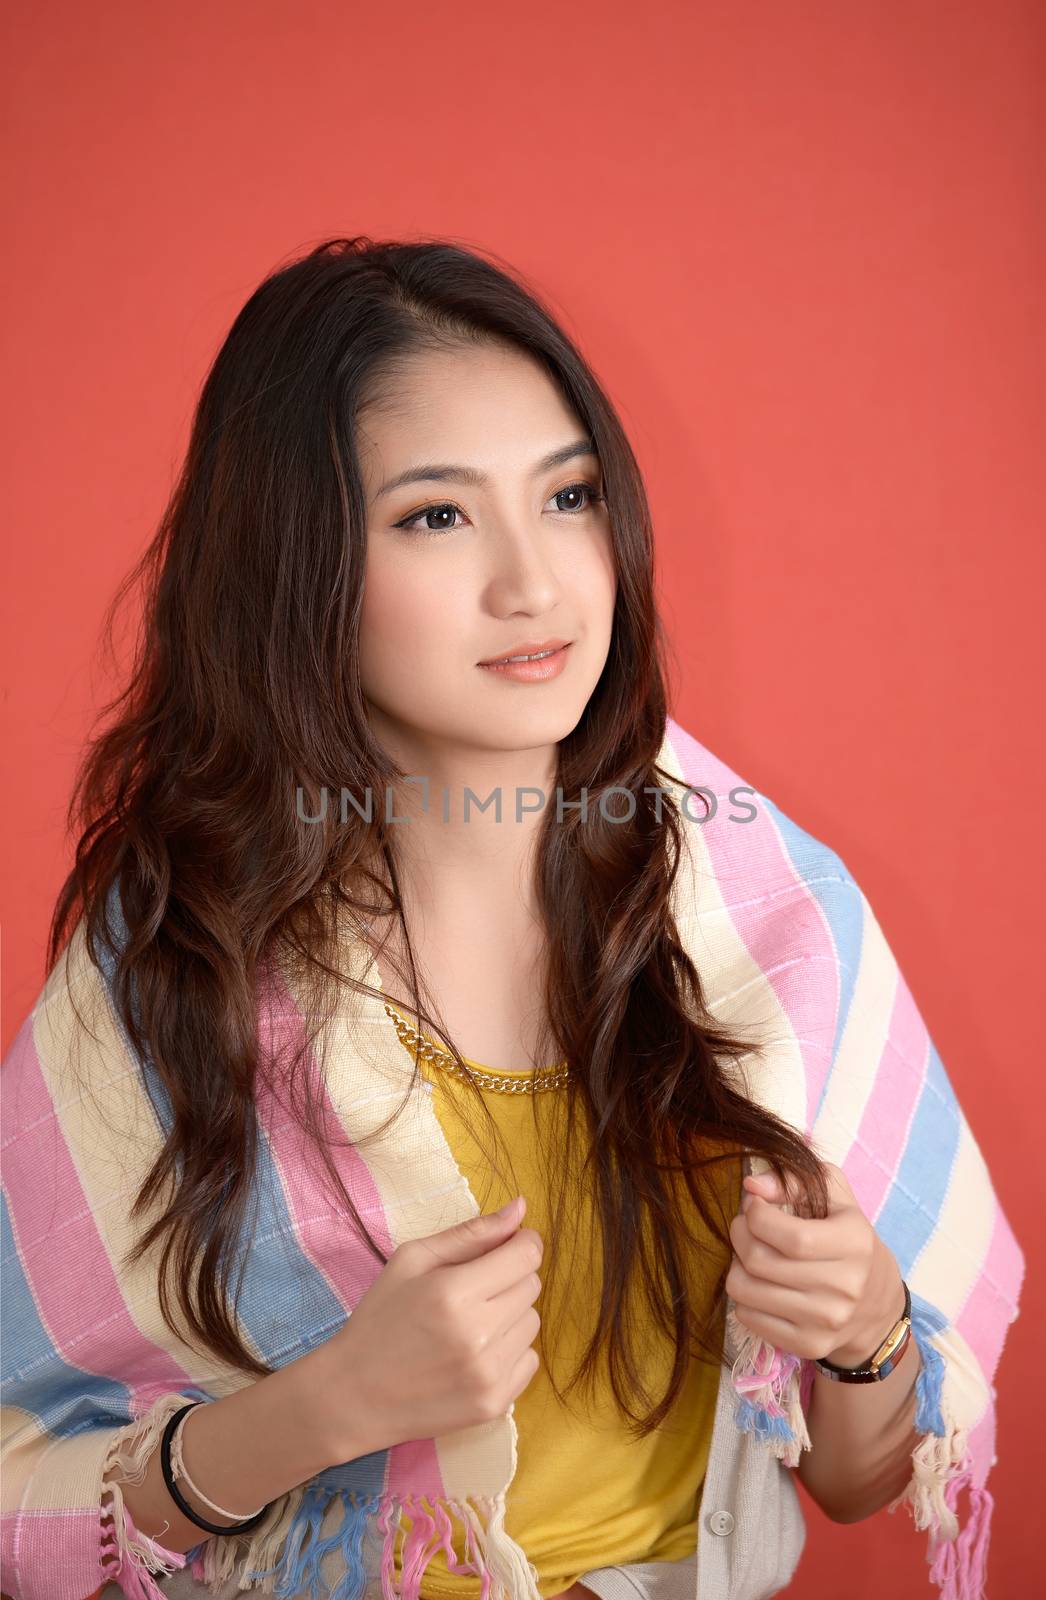 Young Asian cute woman